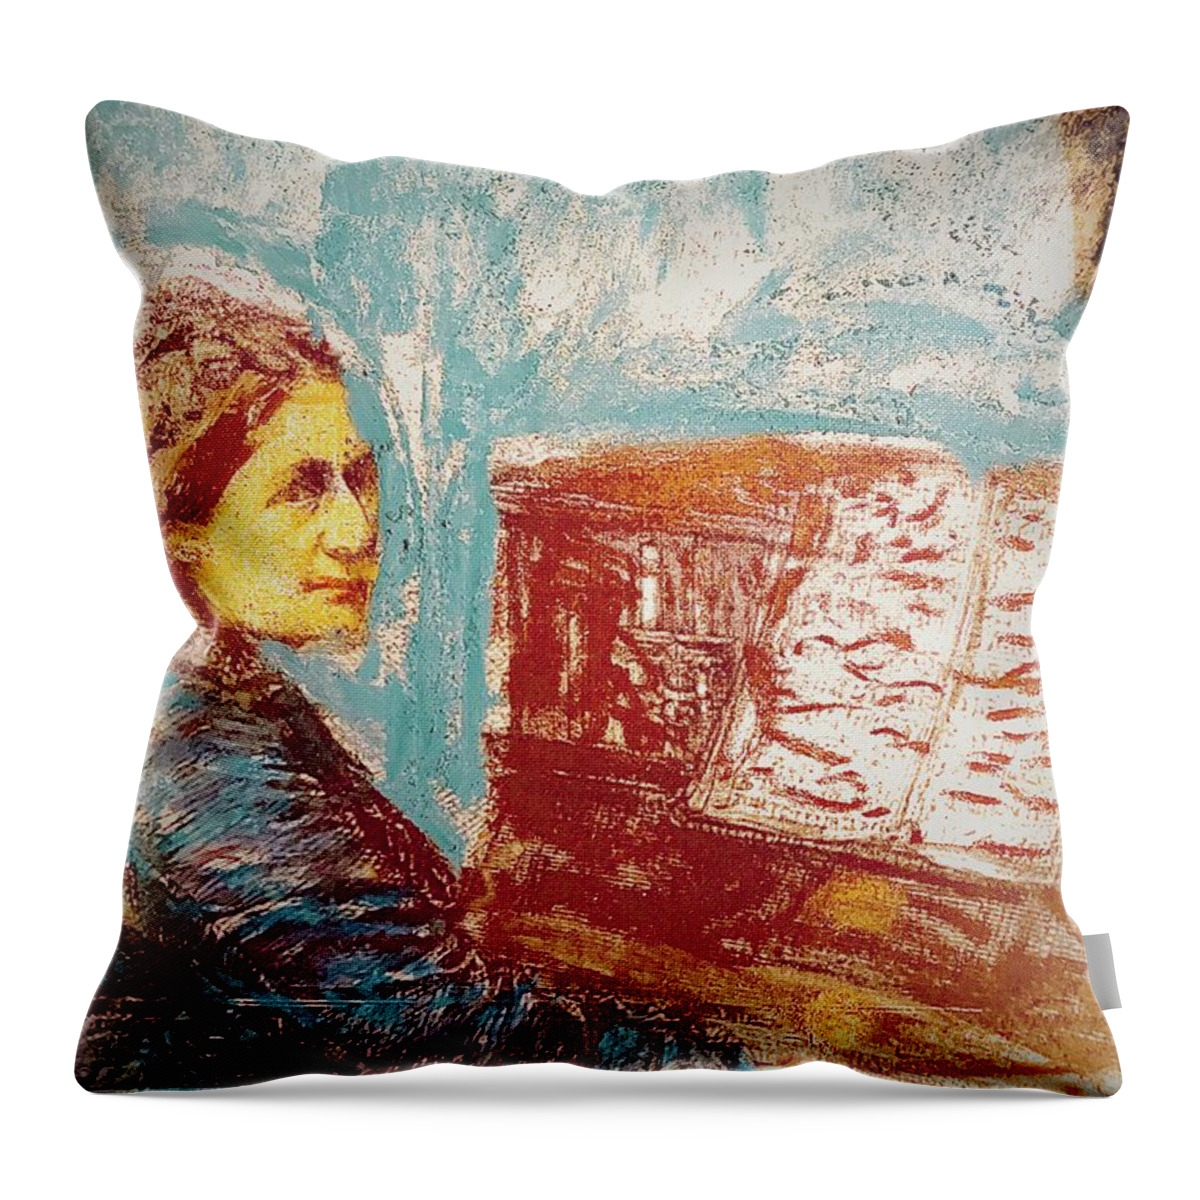 Clara Schumann At Piano Throw Pillow featuring the drawing Clara Schumann Study by Bencasso Barnesquiat